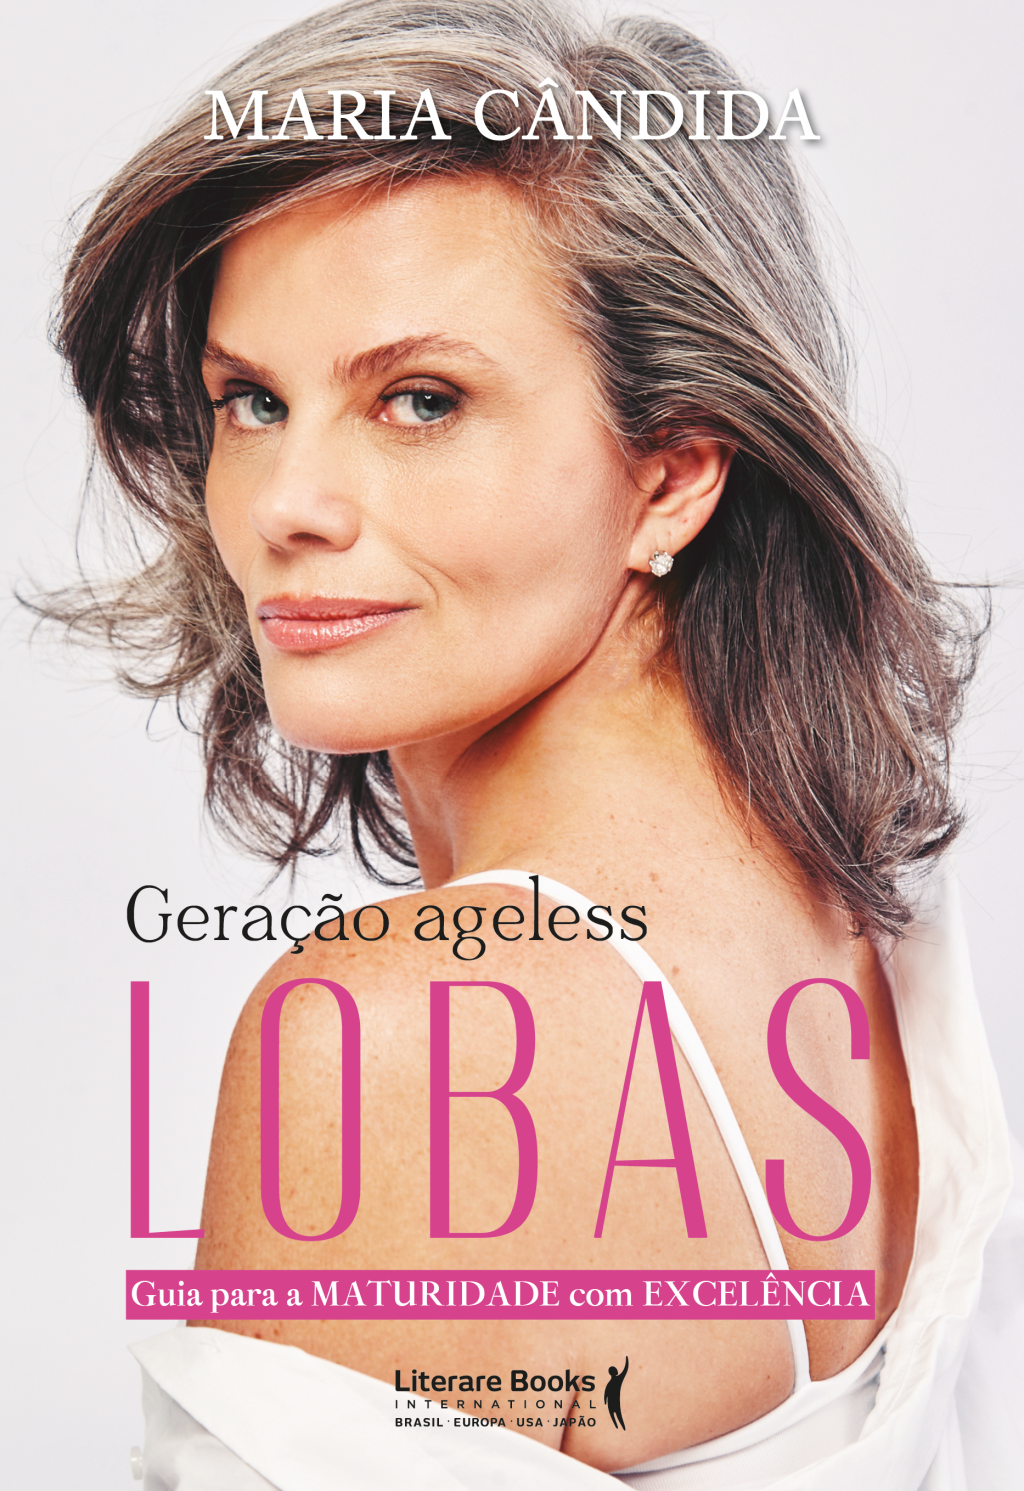 Capa do livro Geração Ageless: Lobas, por Maria Cândida, exibe título com LOBAS em caixa alta e imagem de Maria sorrindo ligeiramente, com cabelos lisos grisalhos.